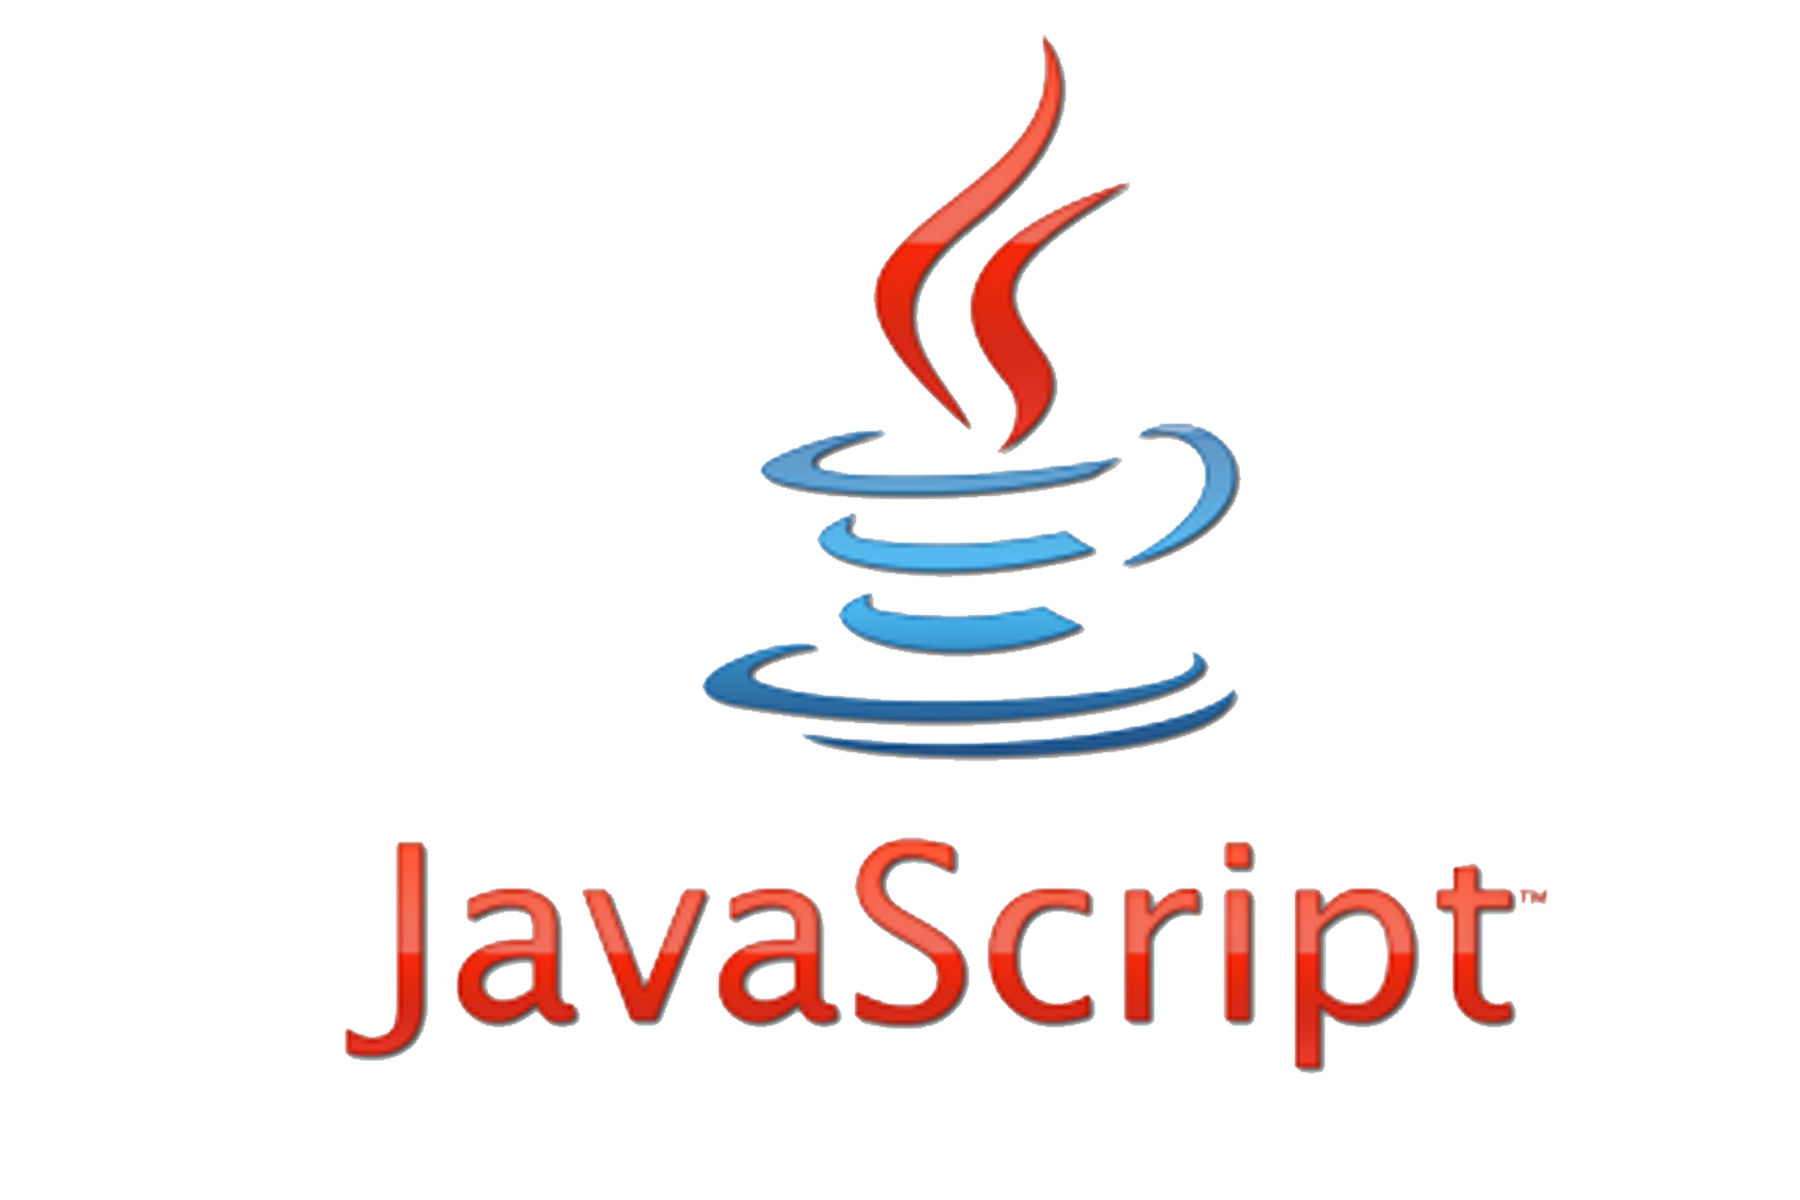 Java round. Язык программирования java скрипт. Джава скрипт логотип. Язык программирования Ява скрипт. Джава скрипт язык программирования логотип.